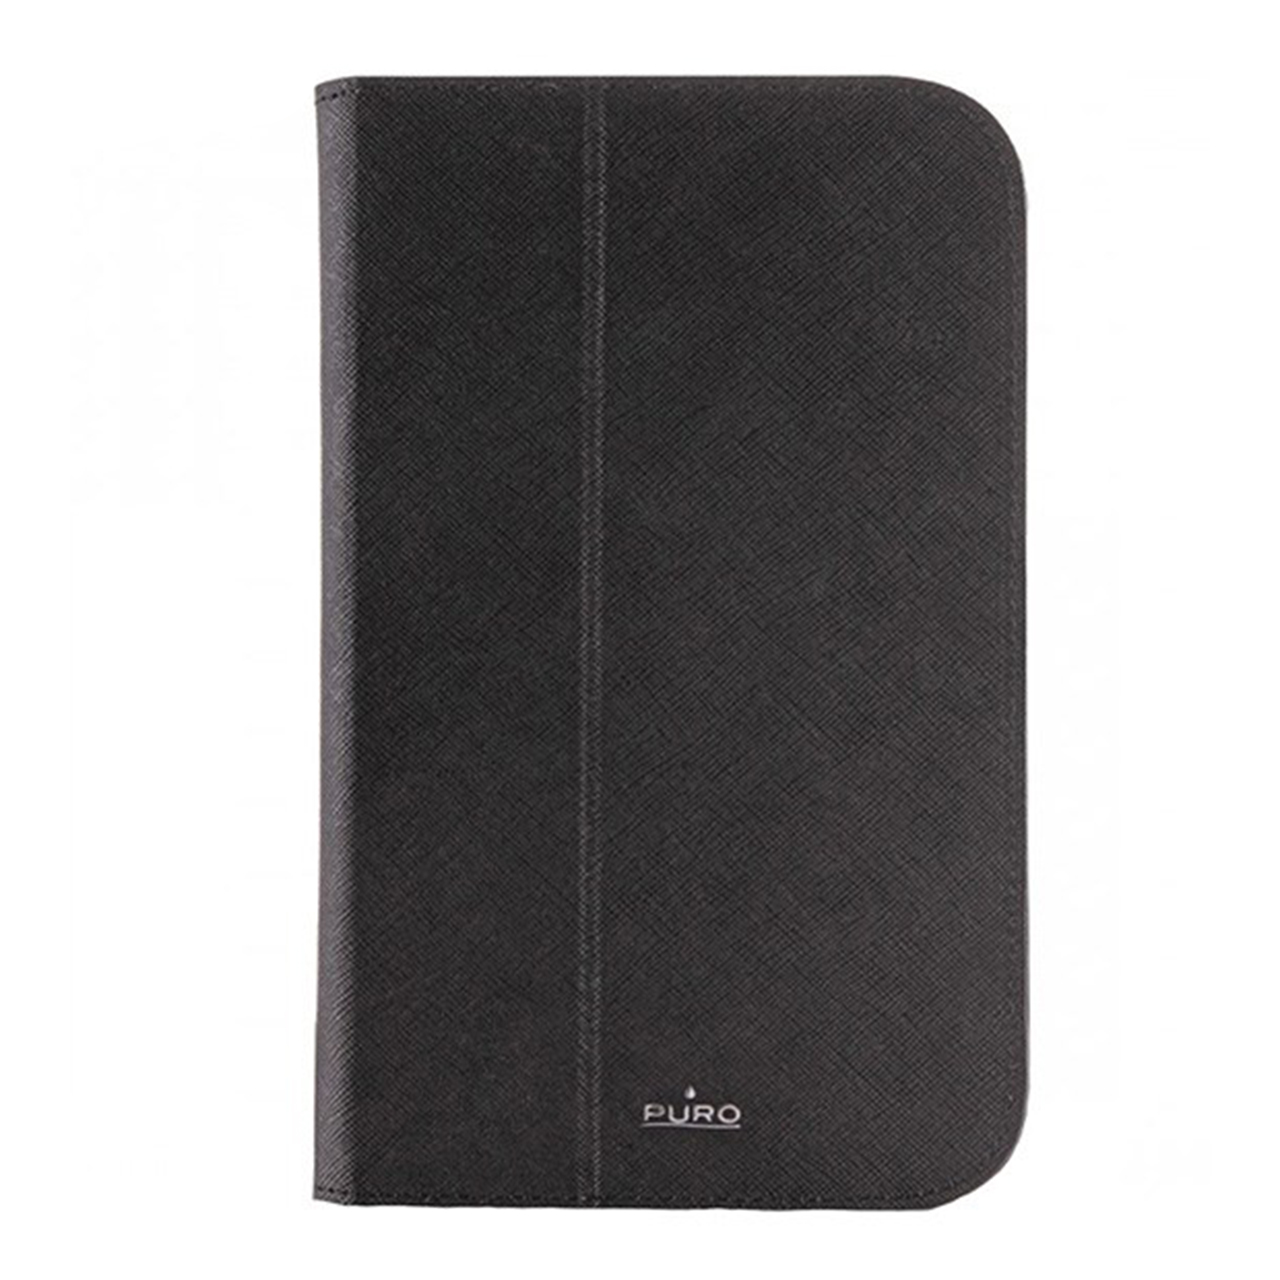 کیف کلاسوری پورو مدل Folio Case GTAB37FOLIO مناسب برای تبلت سامسونگ Galaxy Tab 3 7.0 Inch